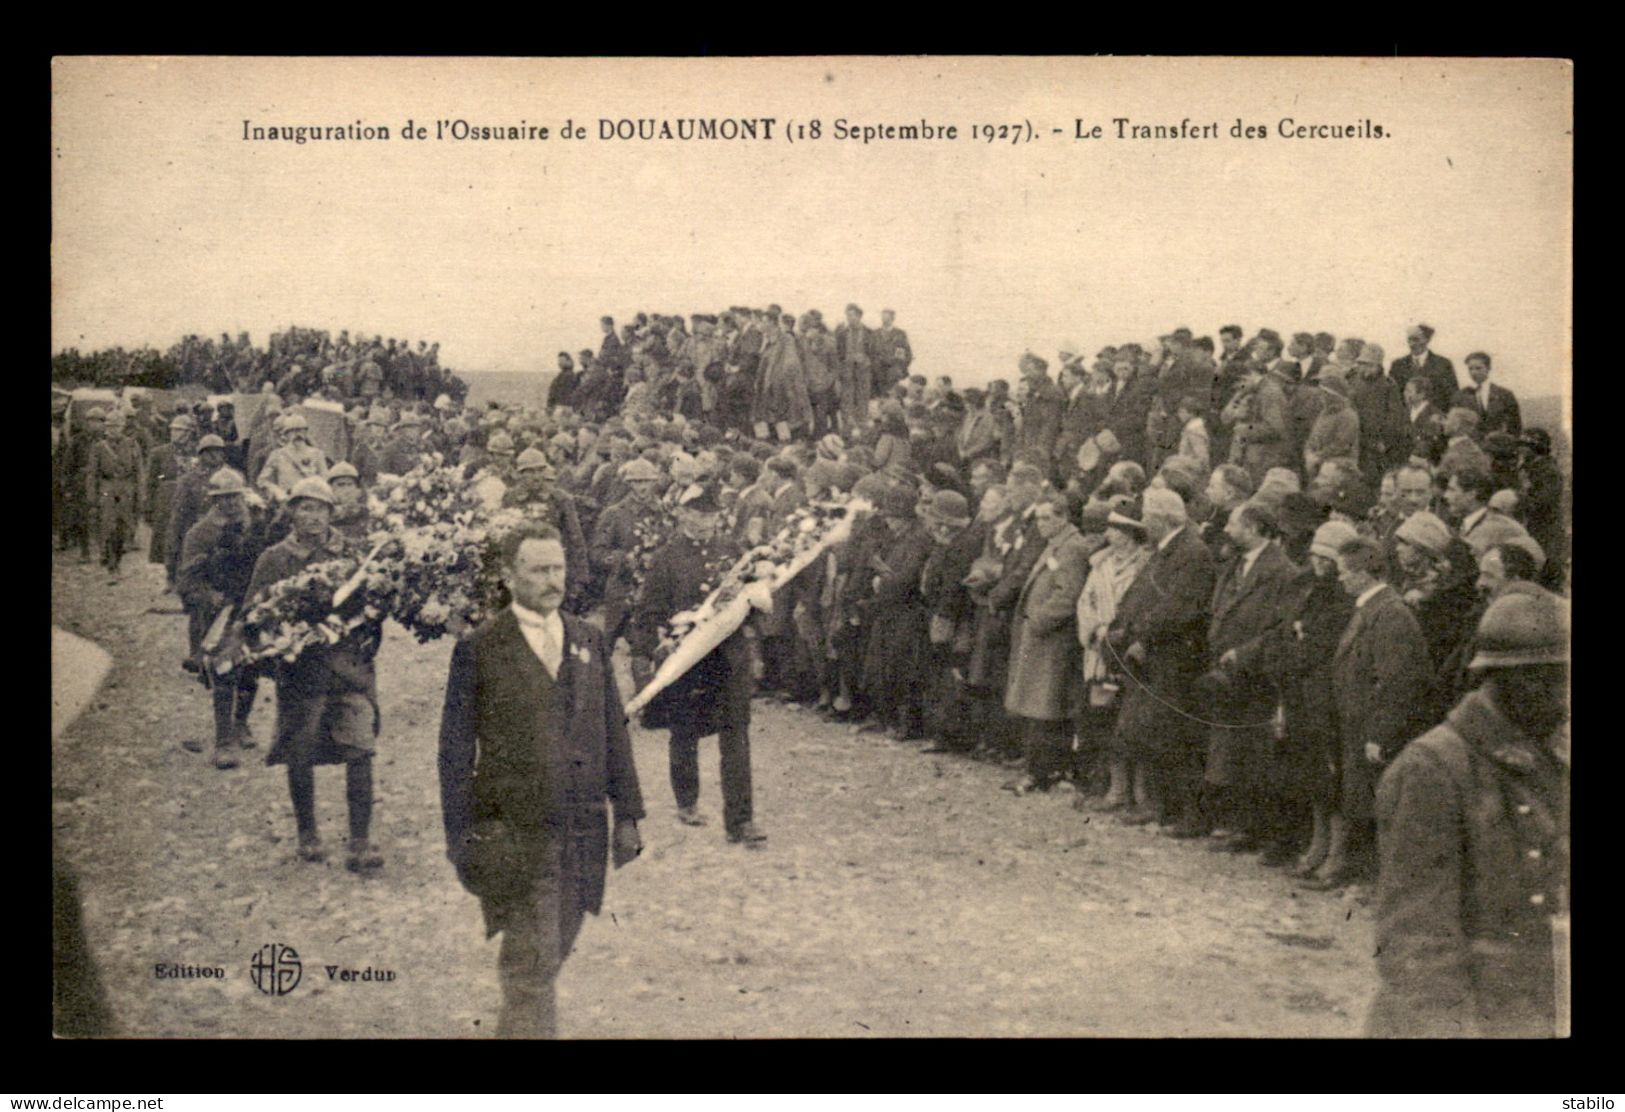 55 - DOUAUMONT - INAUGURATION DE L'OSSUAIRE LE 18 SEPTEMBRE 1927 - TRANSFERT DES CERCUEILS - EDITEUR HS - Douaumont